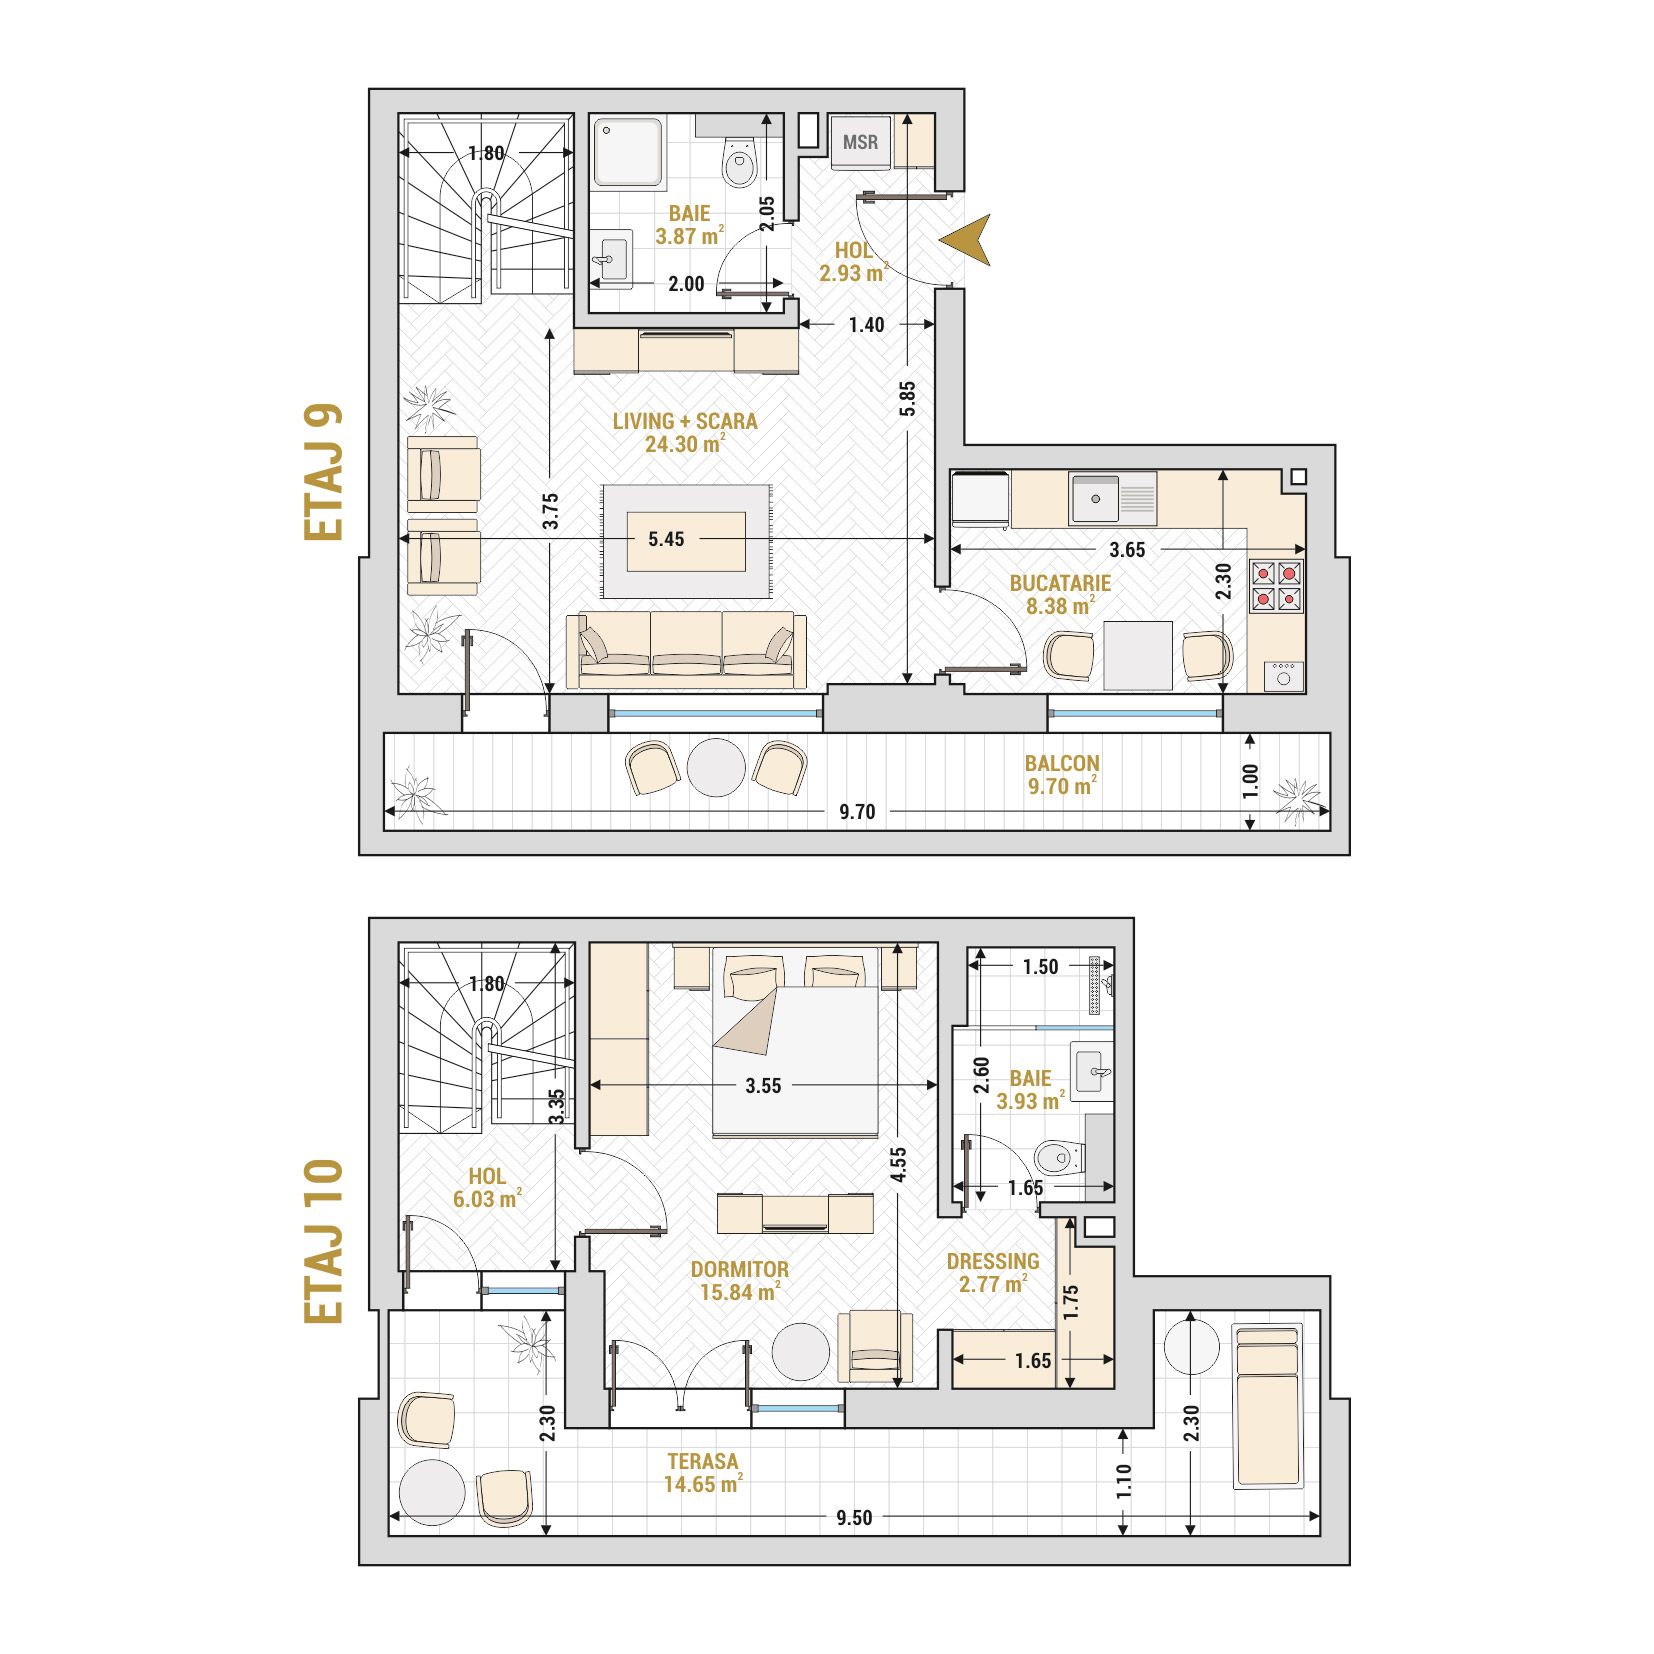 Penthouse 2 Camere Tip 3 Corp 1 - Drumul Taberei Residence - Apartamente de vanzare Bucuresti - Suprafata utila totala - 92.40 mp